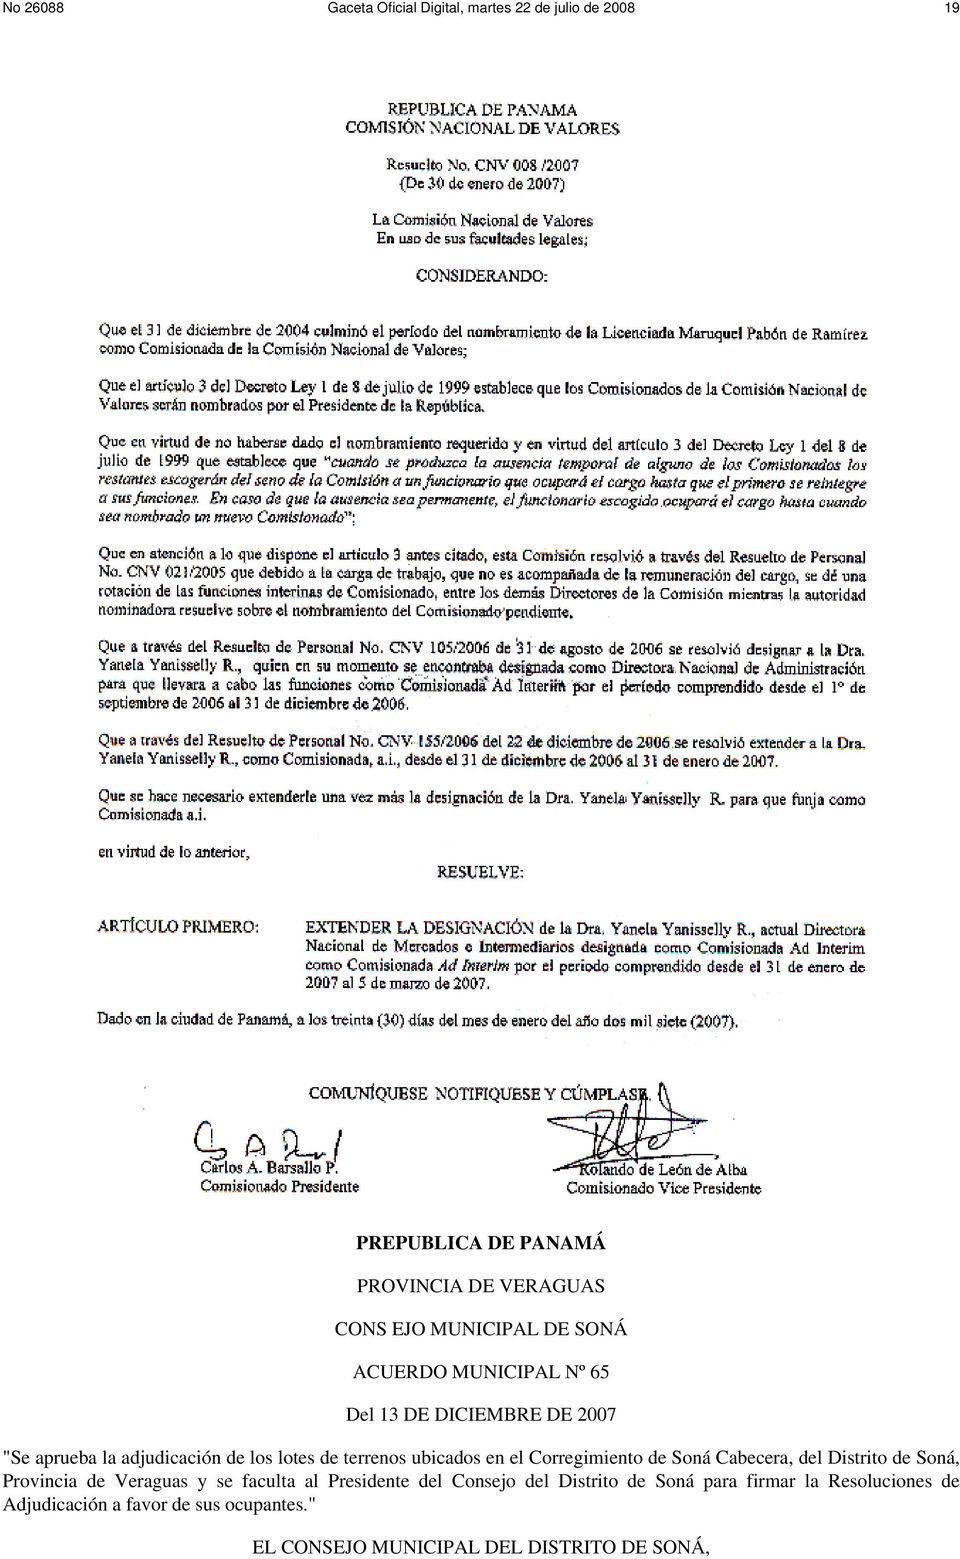 Cabecera, del Distrito de Soná, Provincia de Veraguas y se faculta al Presidente del Consejo del Distrito de